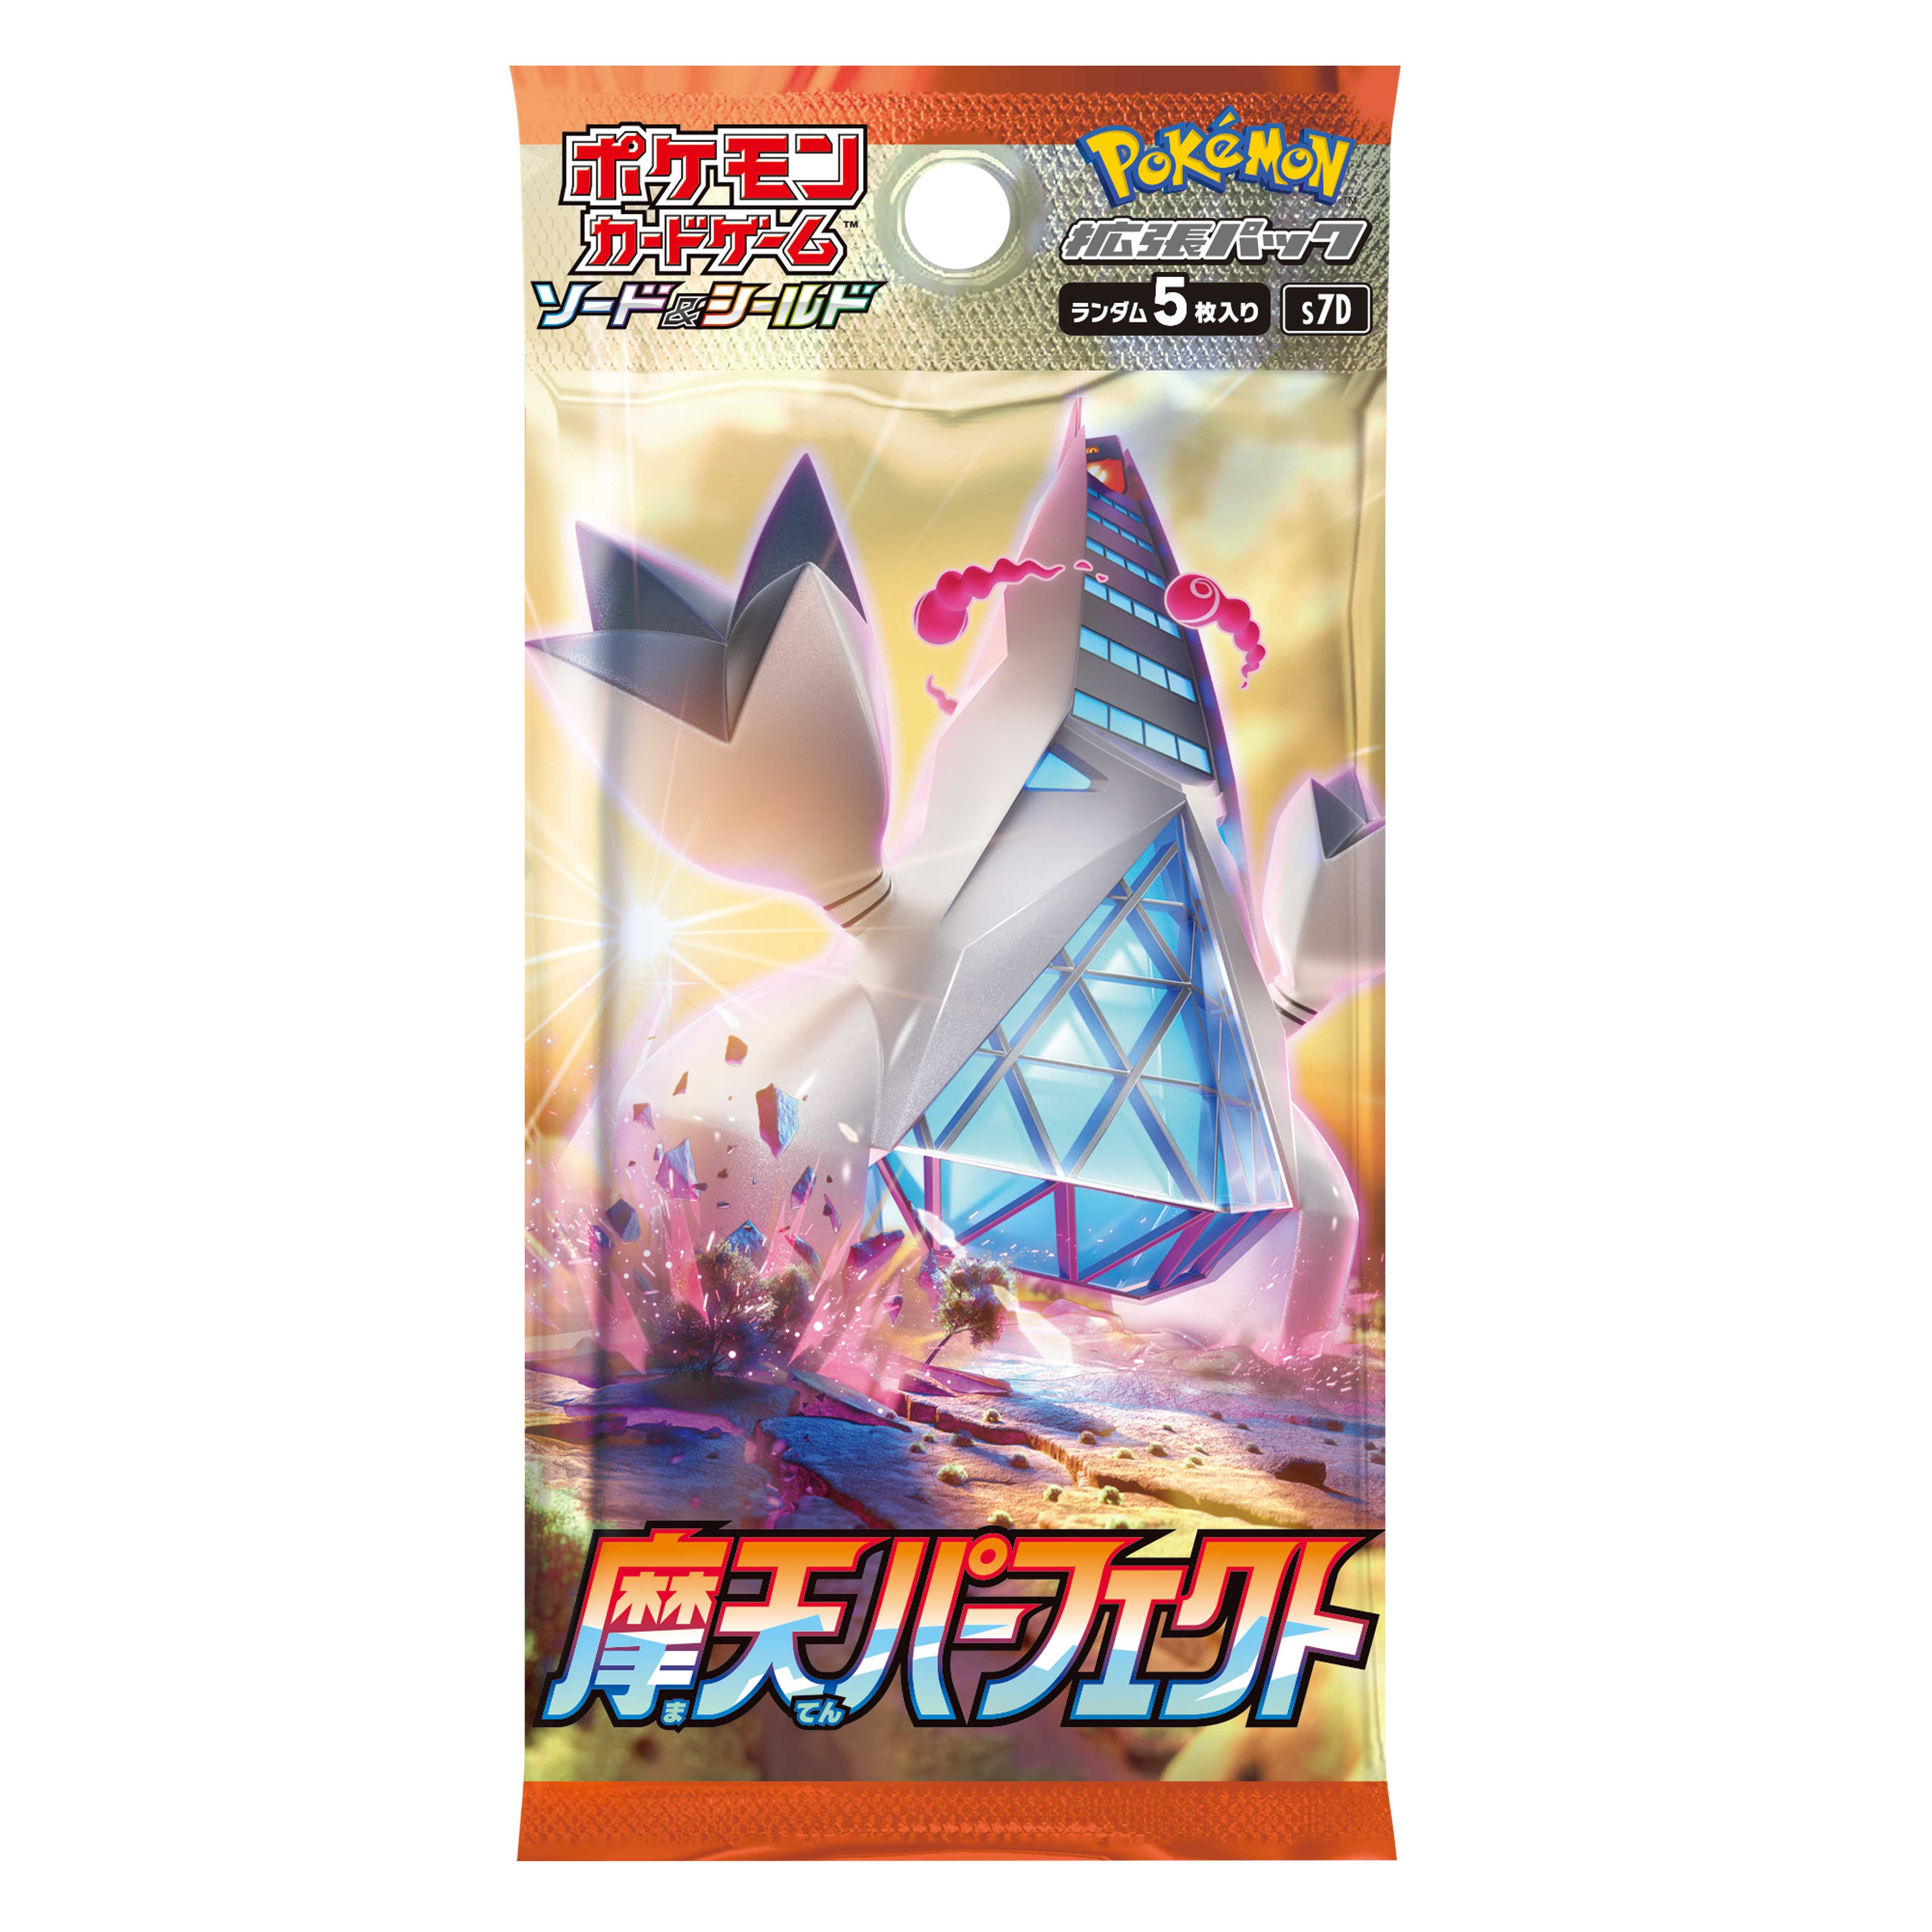 Cartes Pokémon Épée et Bouclier "Skyscraping Perfect" Duralugon [S7D] (display japonais)--1